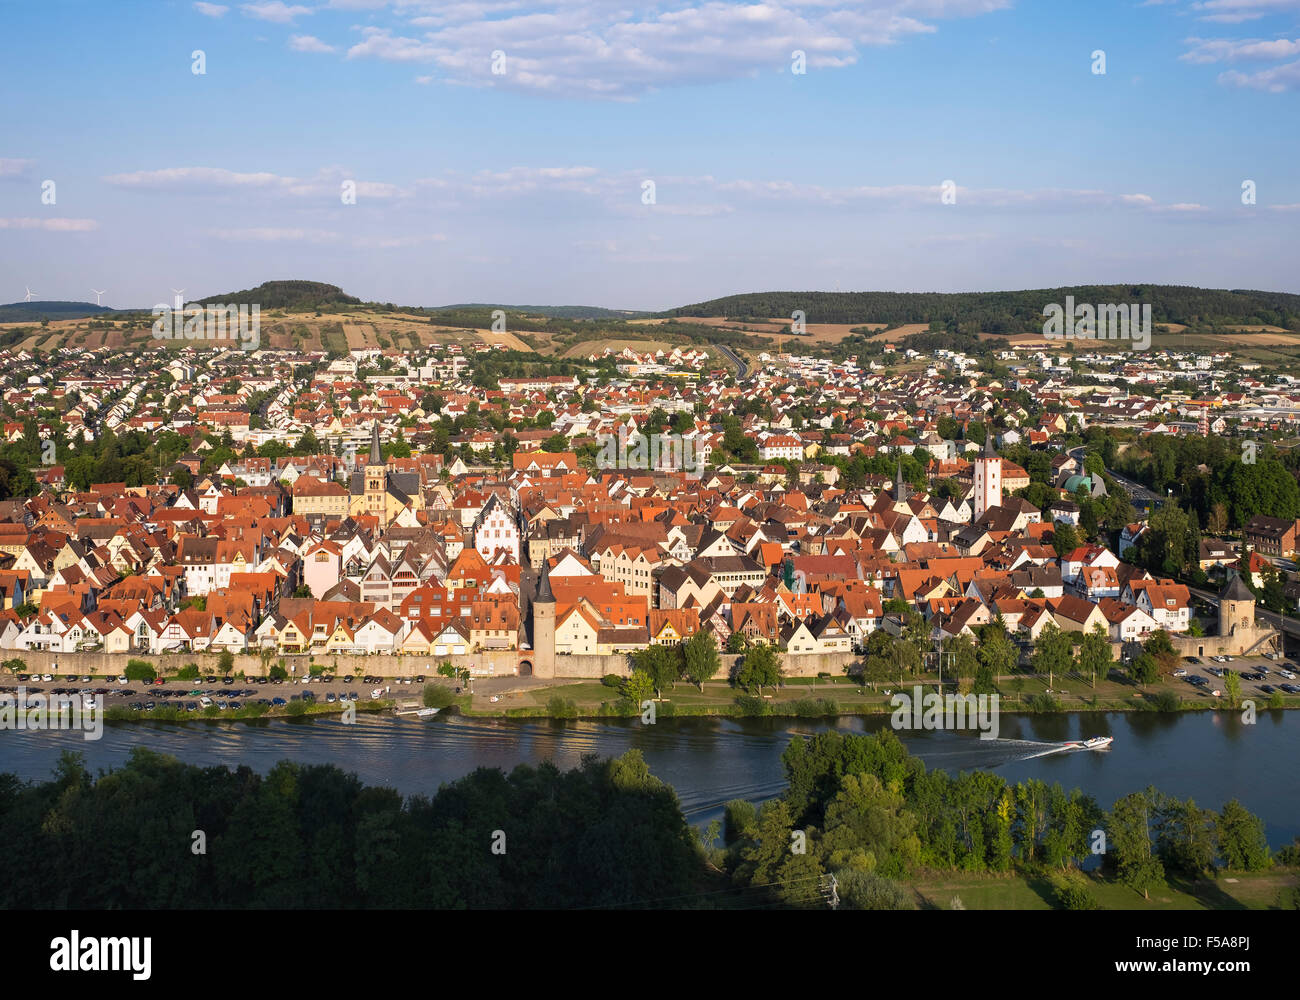 Il fiume principale e il centro storico, Karlstadt, bassa Franconia, Franconia, Baviera, Germania Foto Stock